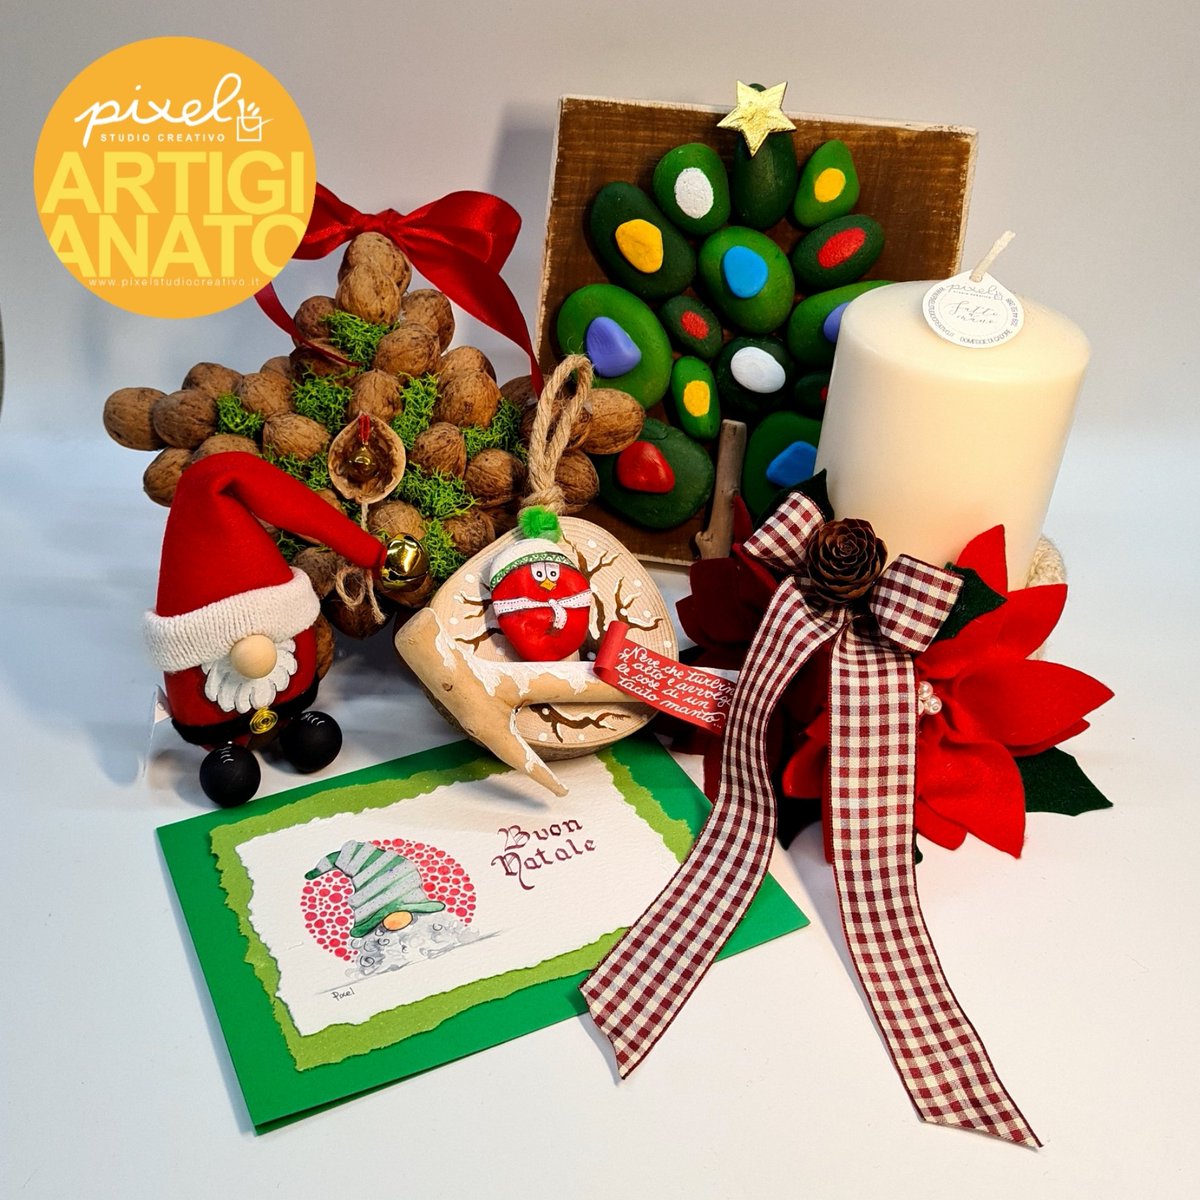 Alcune delle nostre idee regalo 🪵🪨💡pixelstudiocreativo.it/shop #studiocreativopixel #Natale #Christmas #artigianatoitaliano #artigianatoartistico #artigianatocreativo #artigianato #regalo #gift #GiftArt #shopping